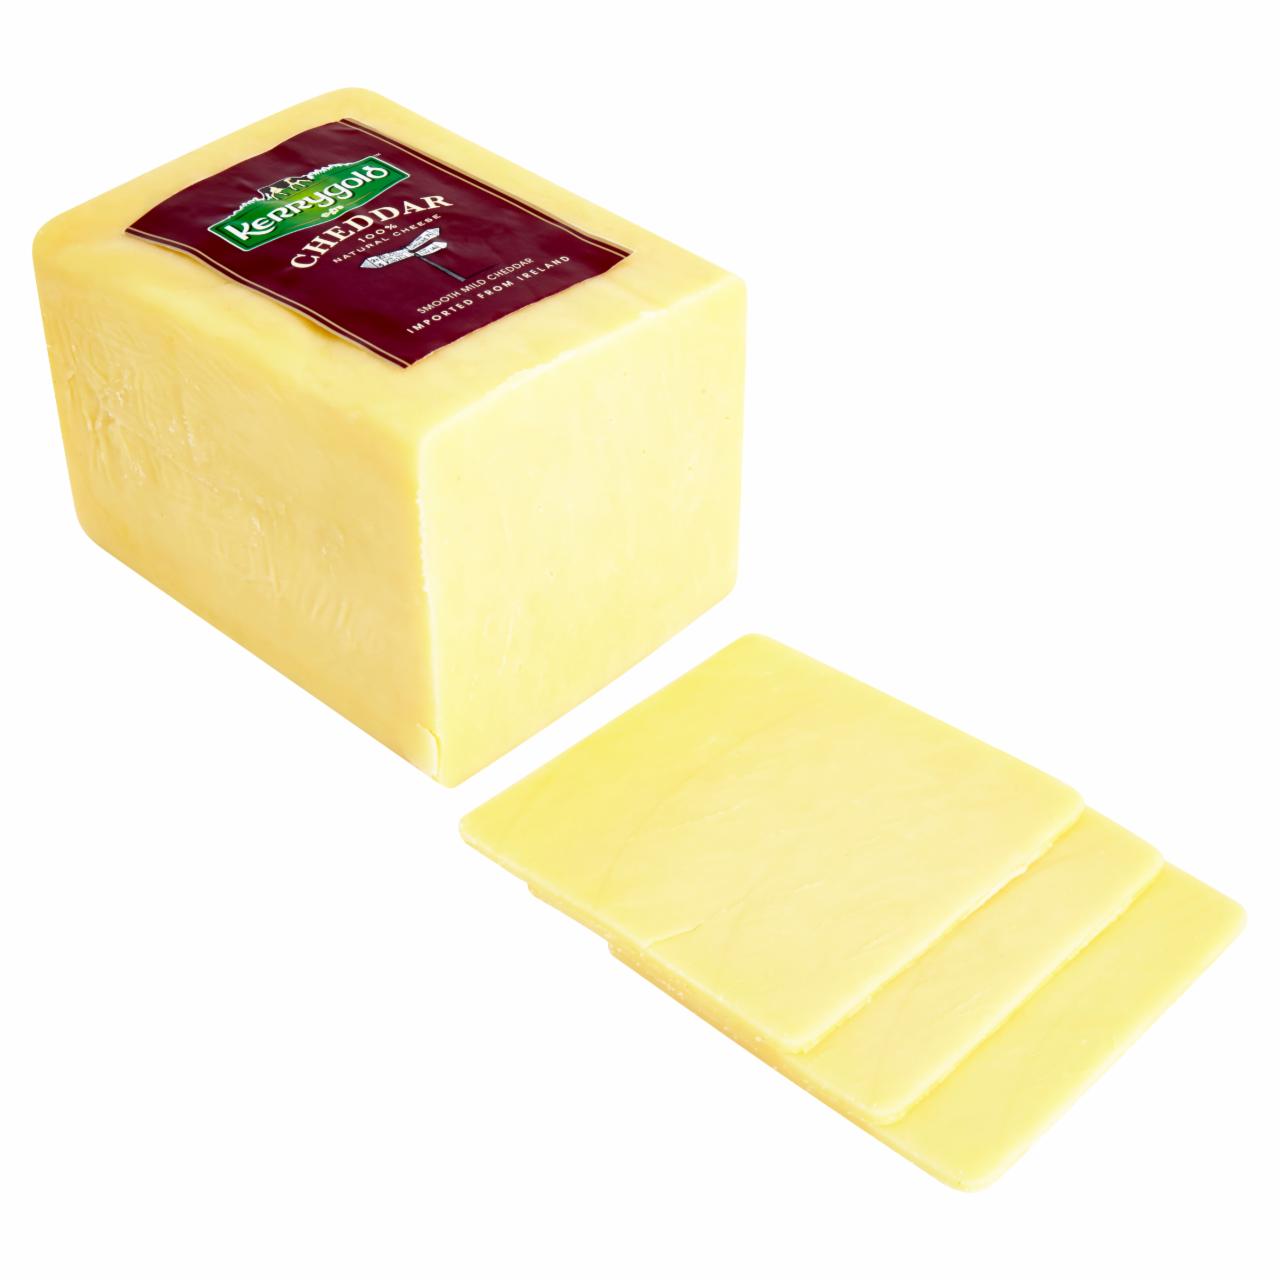 Képek - Kerrygold fehér Cheddar sajt